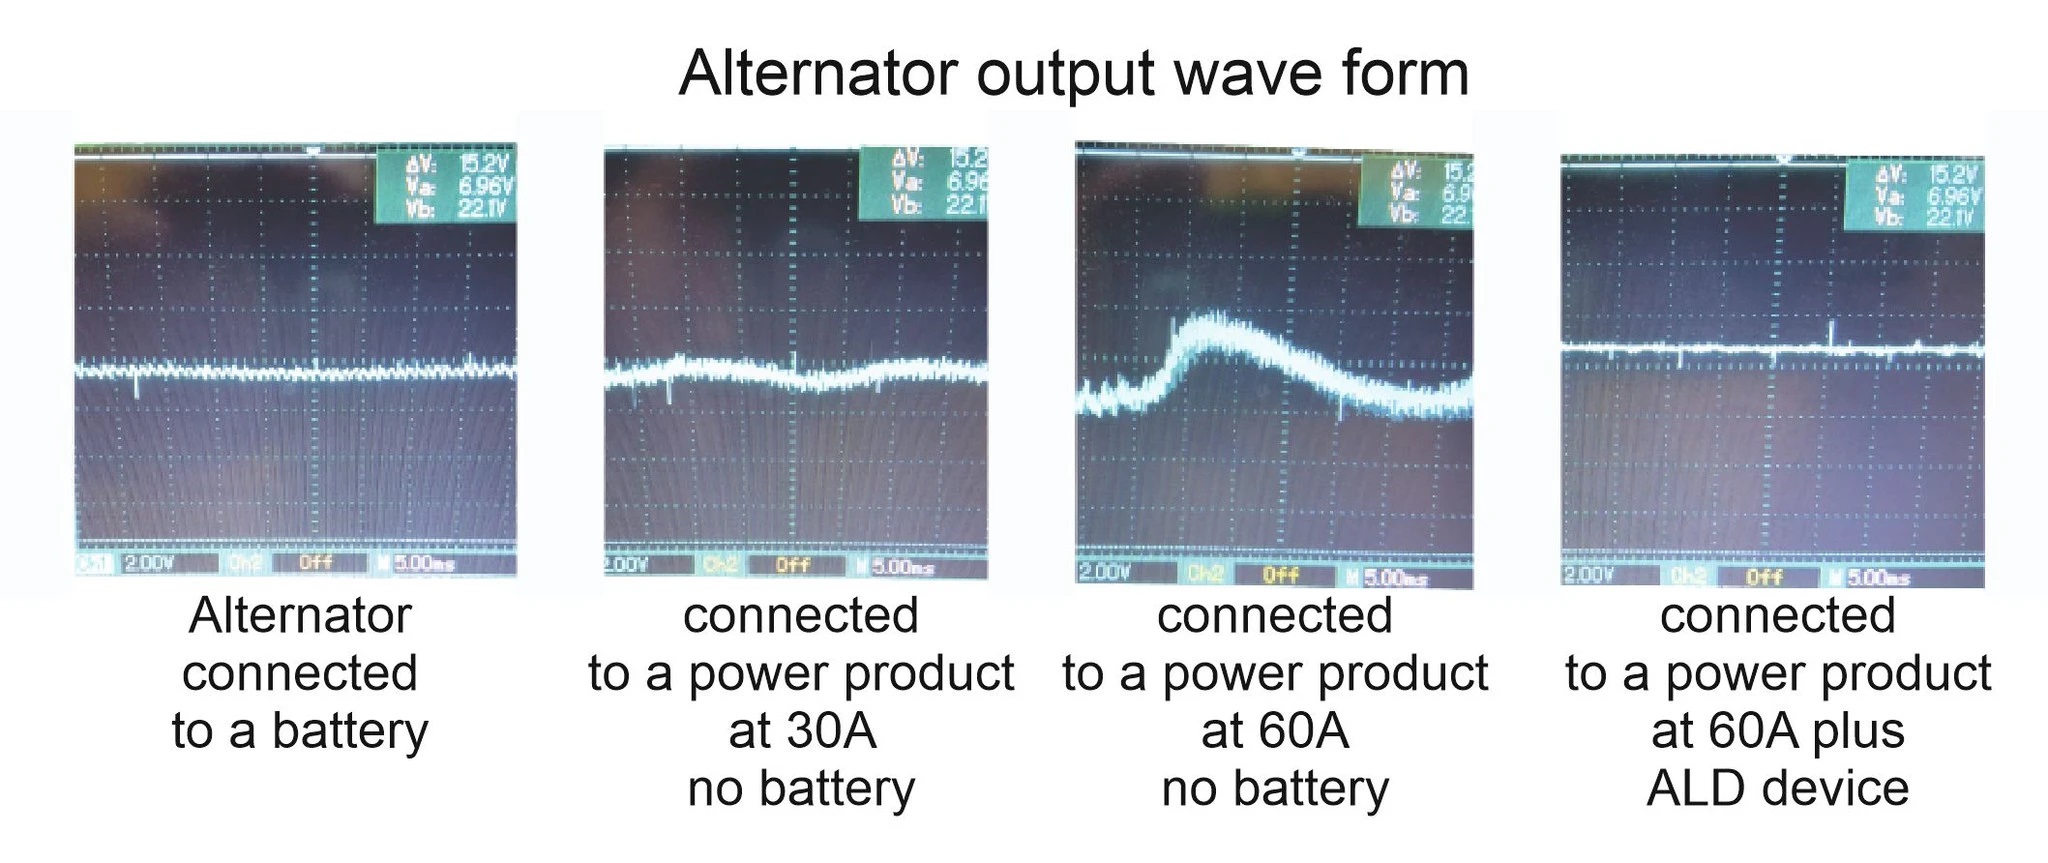 Altternator output wave form ALD17500